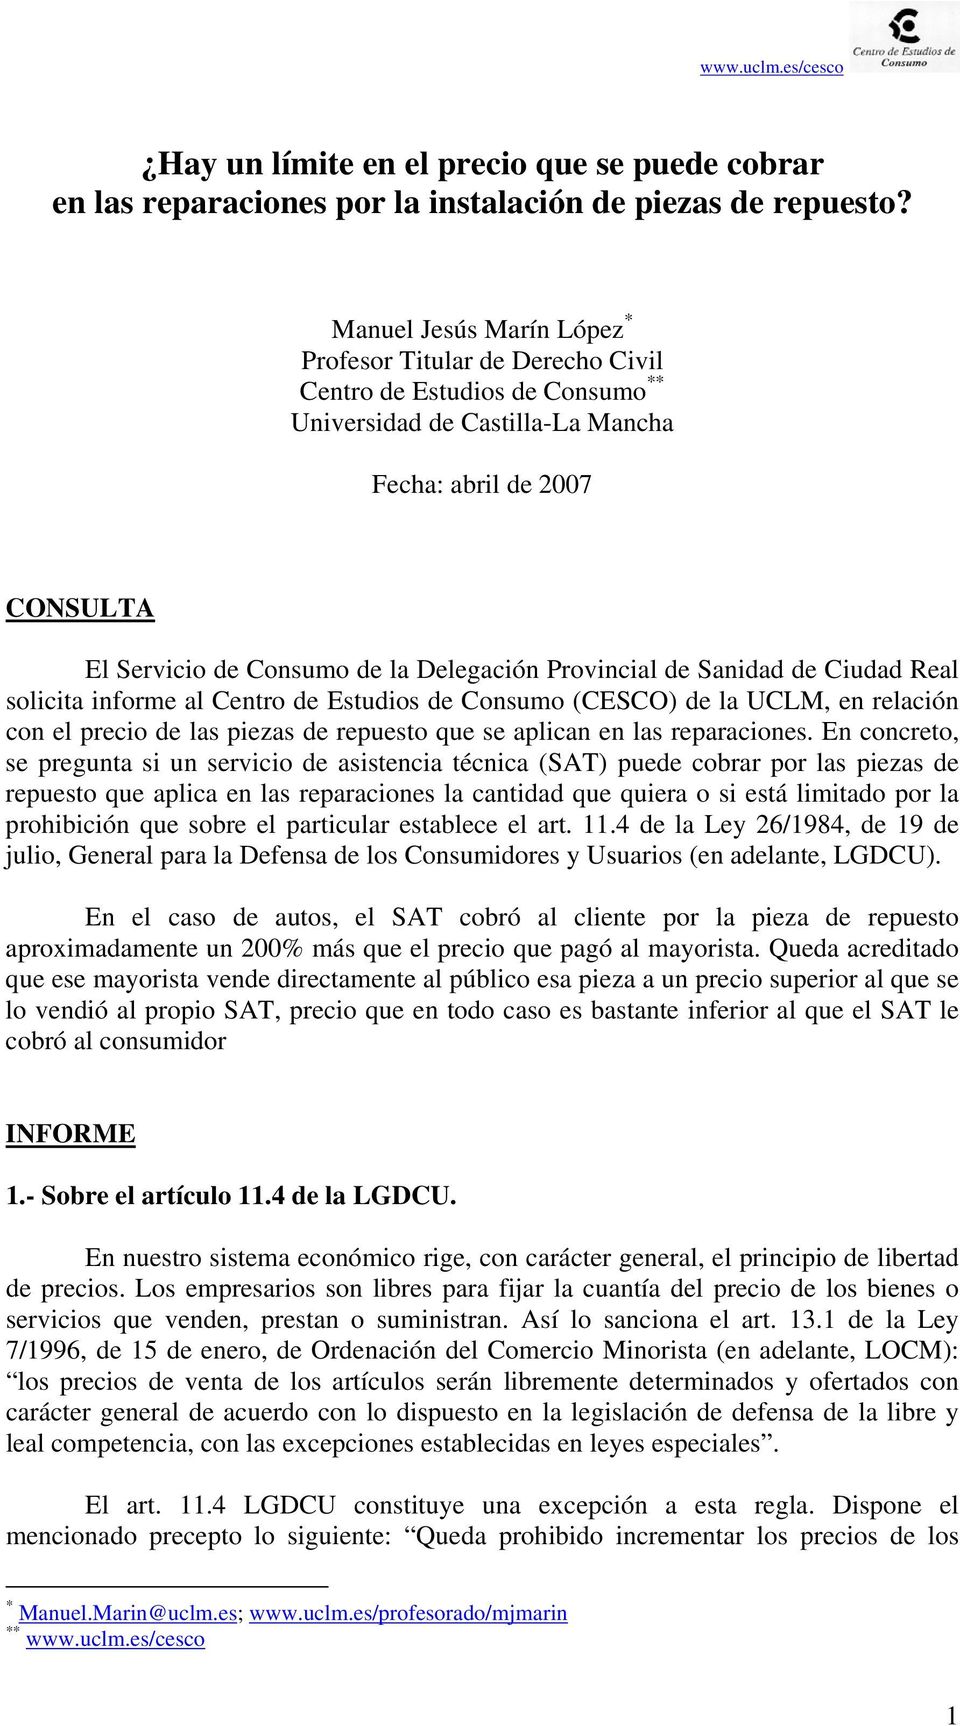 Provincial de Sanidad de Ciudad Real solicita informe al Centro de Estudios de Consumo (CESCO) de la UCLM, en relación con el precio de las piezas de repuesto que se aplican en las reparaciones.